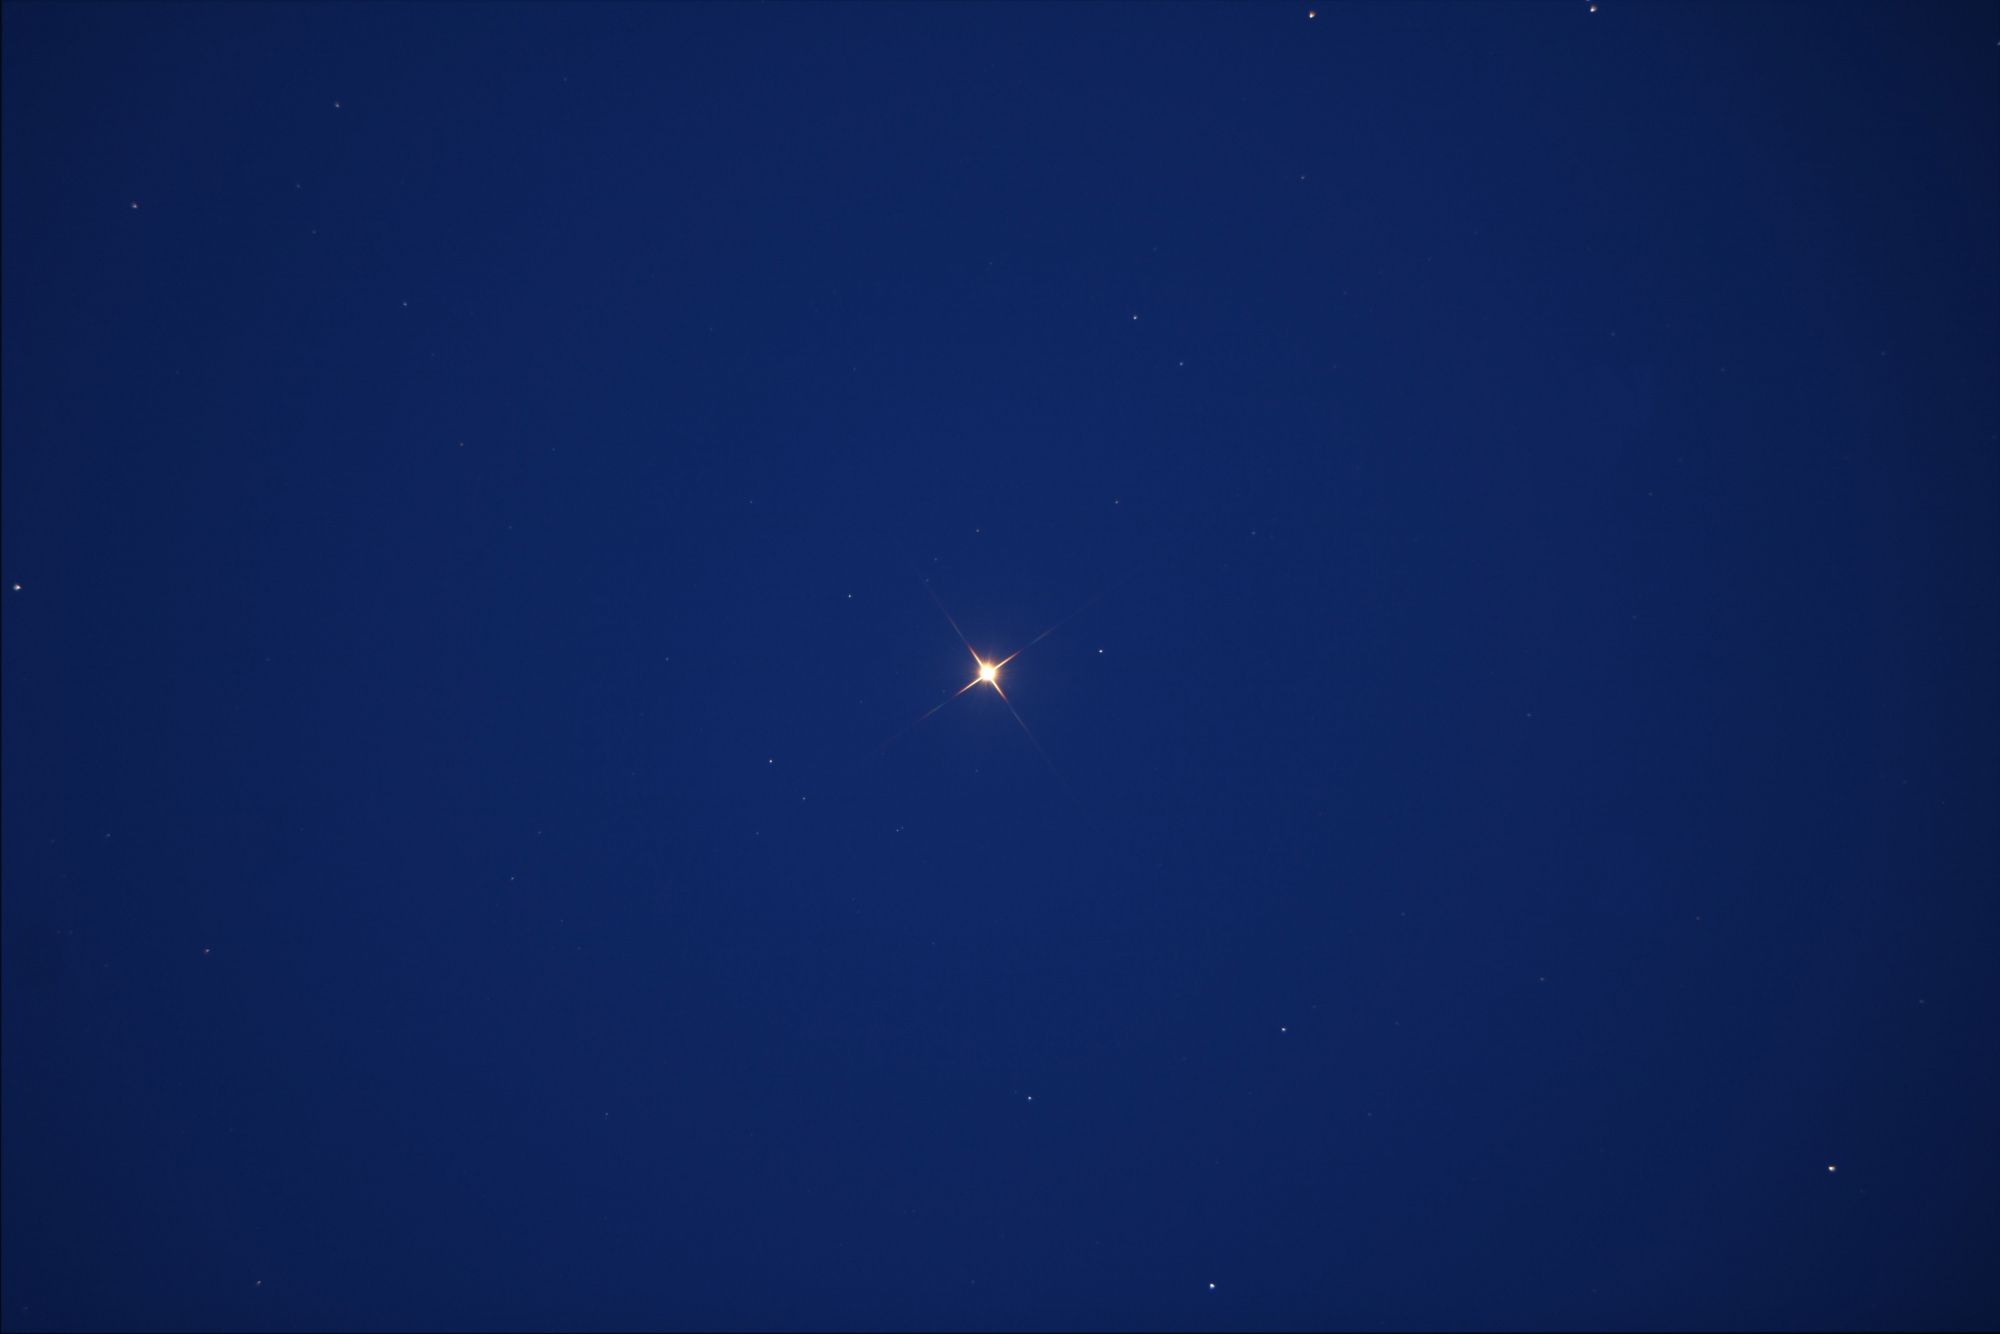 1 Betelgeuse send.jpg